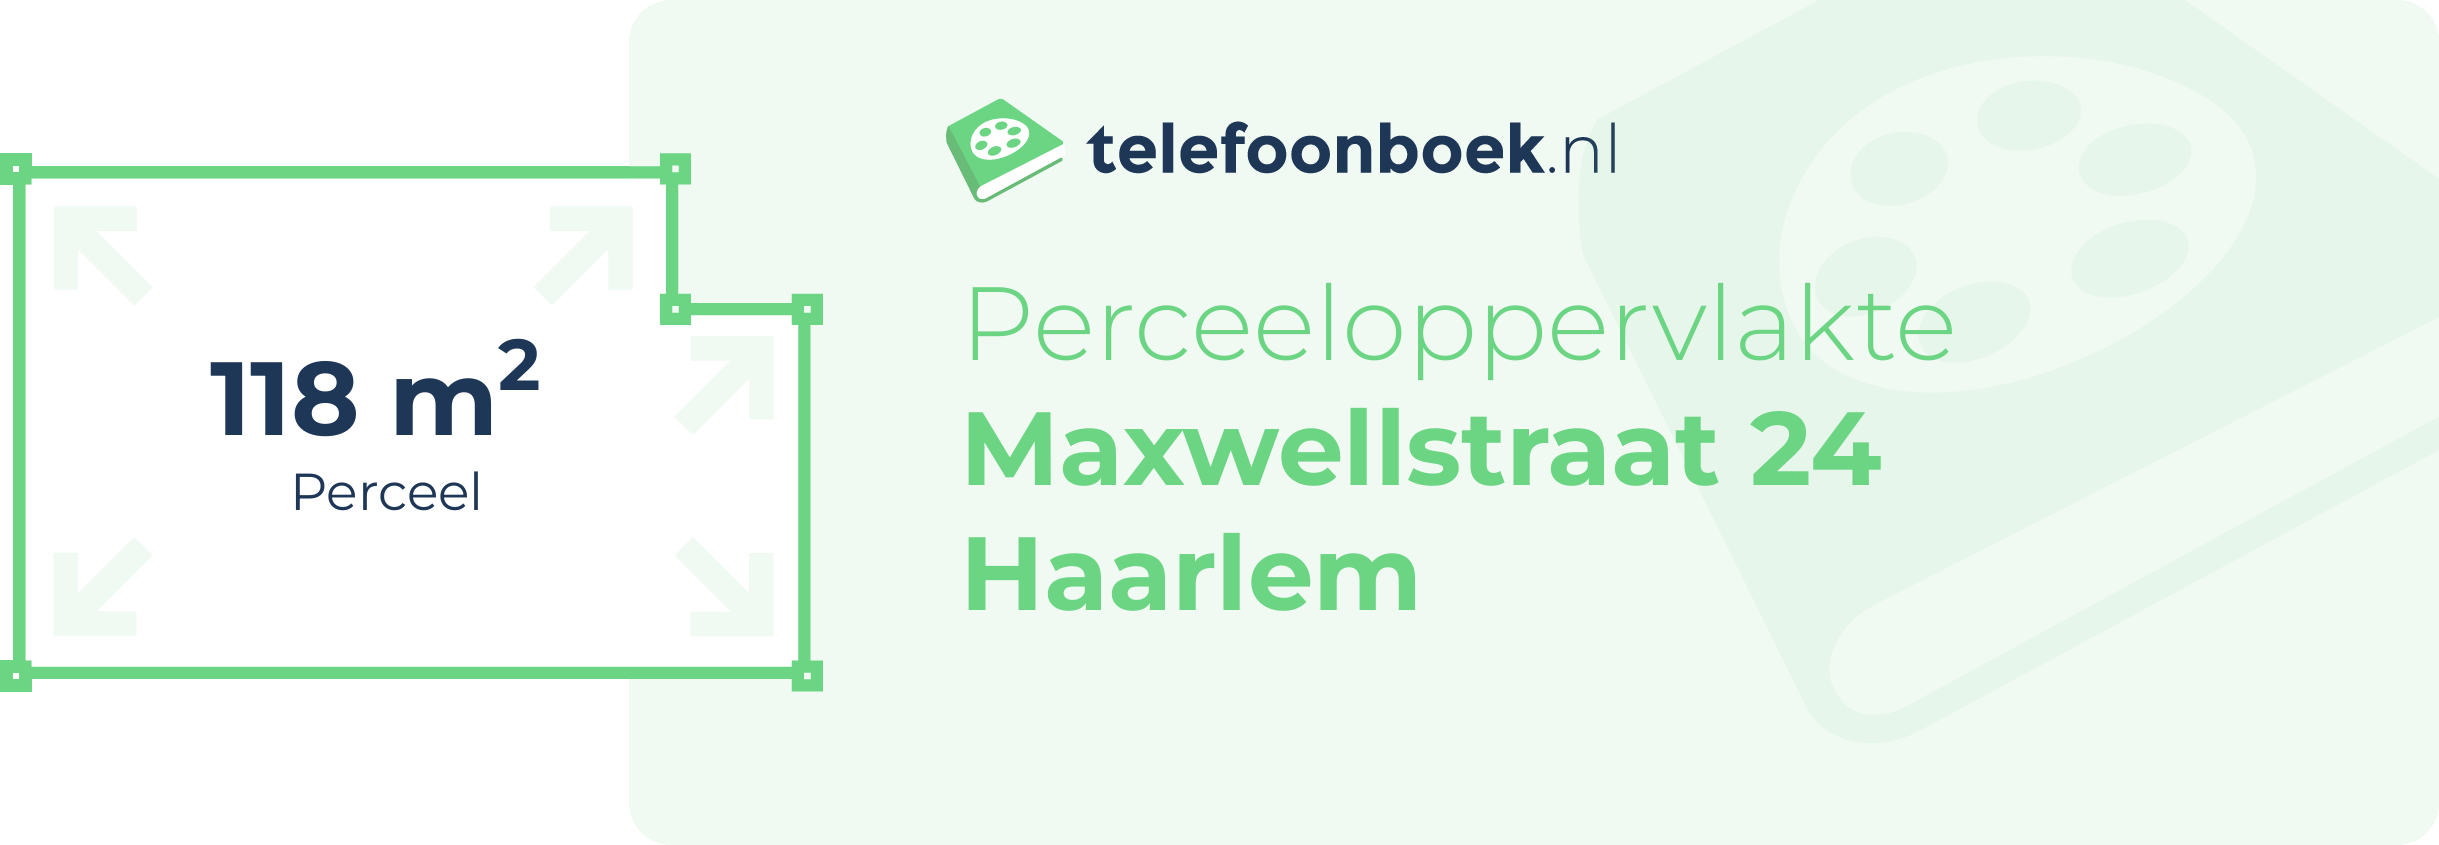 Perceeloppervlakte Maxwellstraat 24 Haarlem